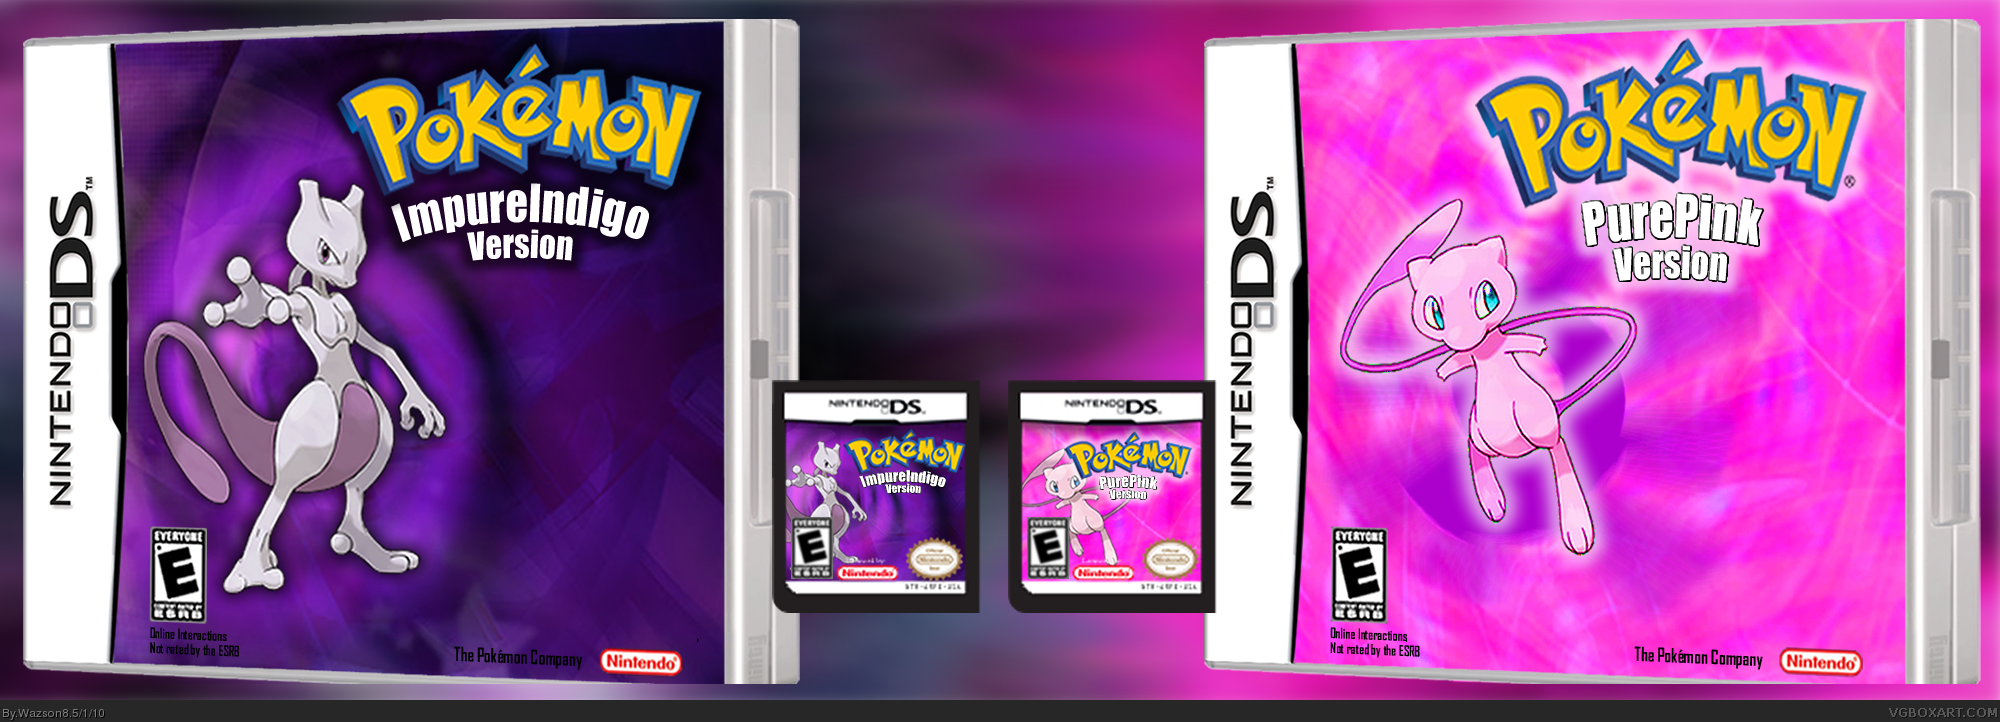 Pokemon: PurePink and Impure Indigo Versions box cover